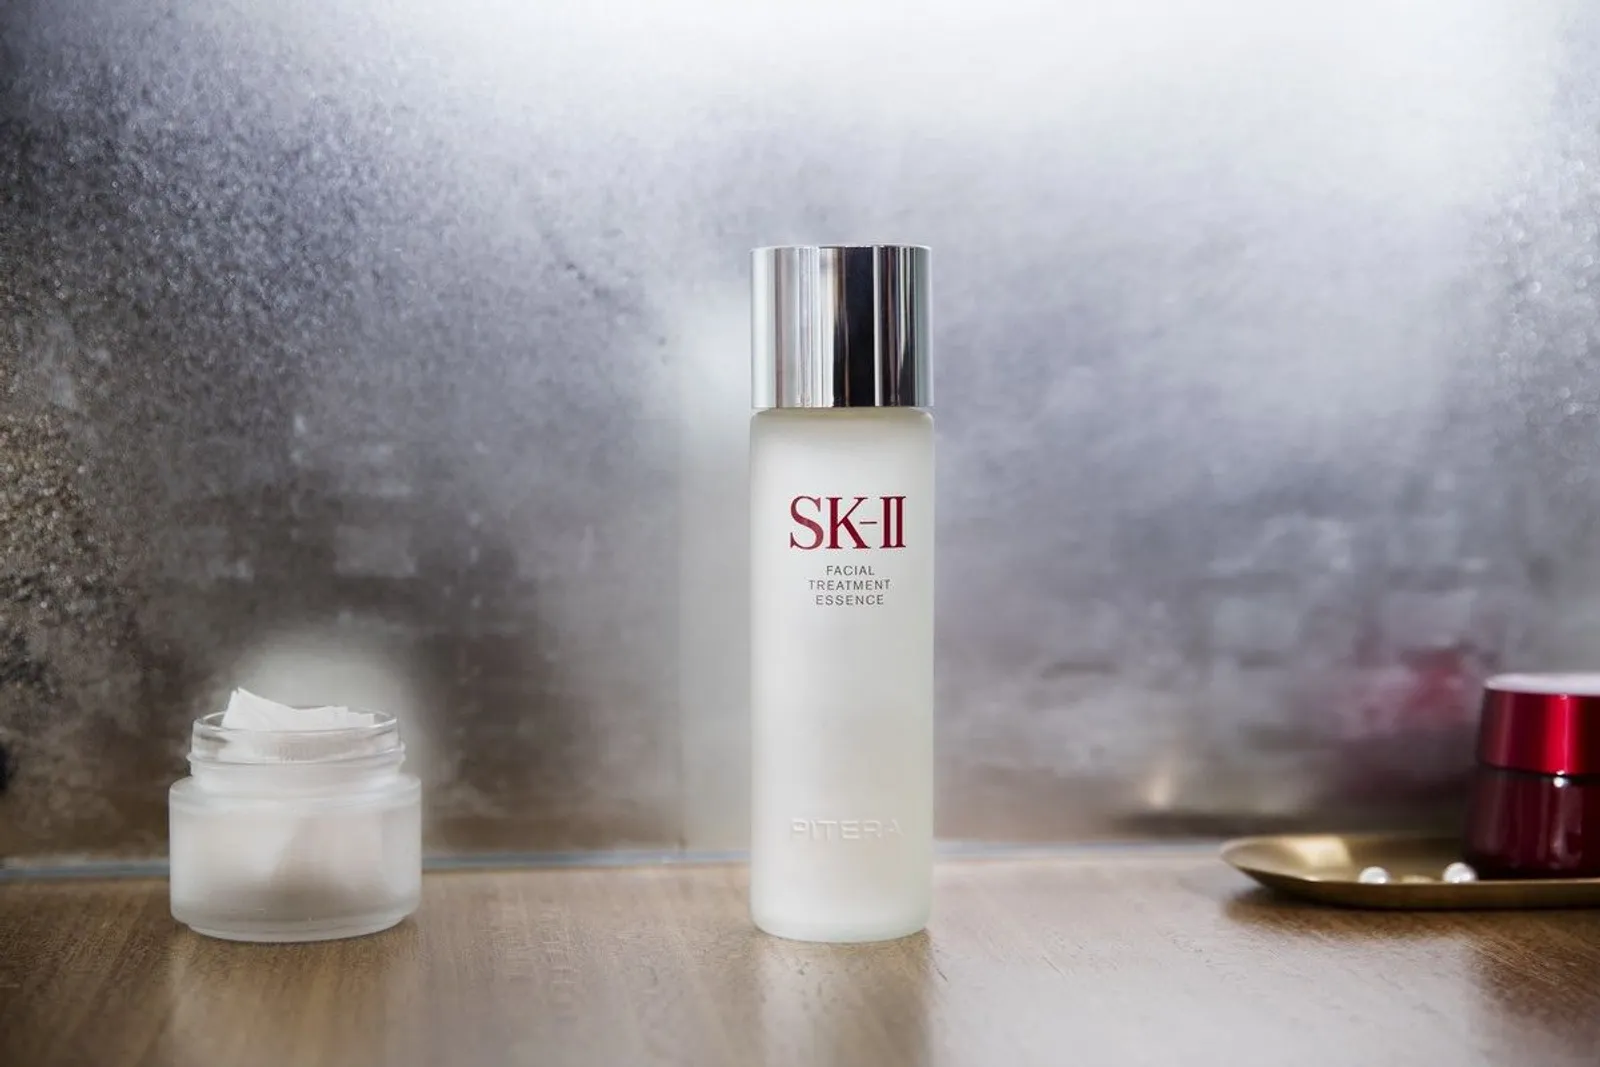 Pancarkan Pesona Terbaik: 3 Hal Berharga dari SK-II Bare Skin Project